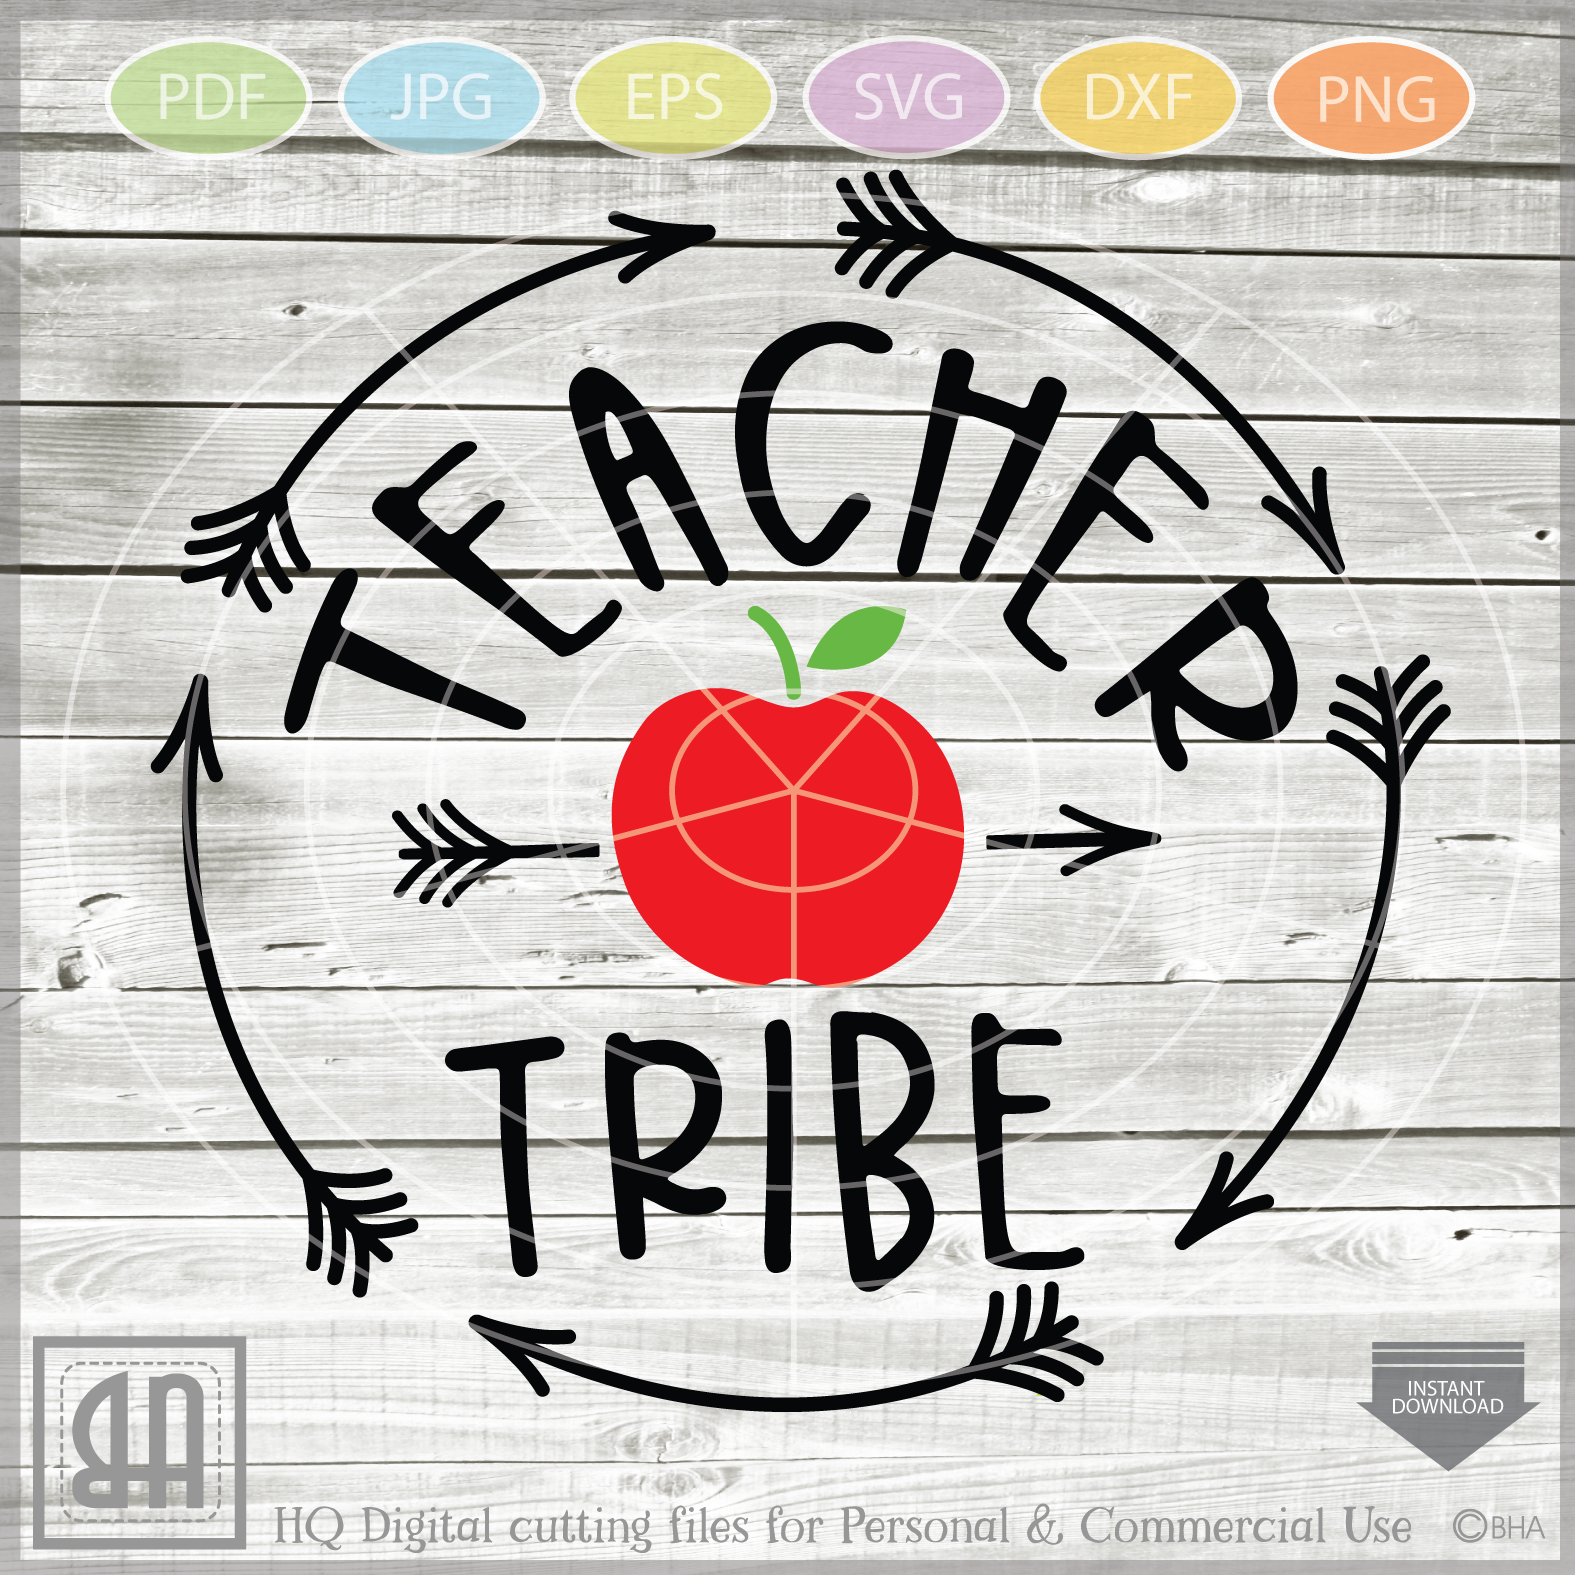 Download Teacher Bundle SVG - Teach svg - Teacher appreciation gifts